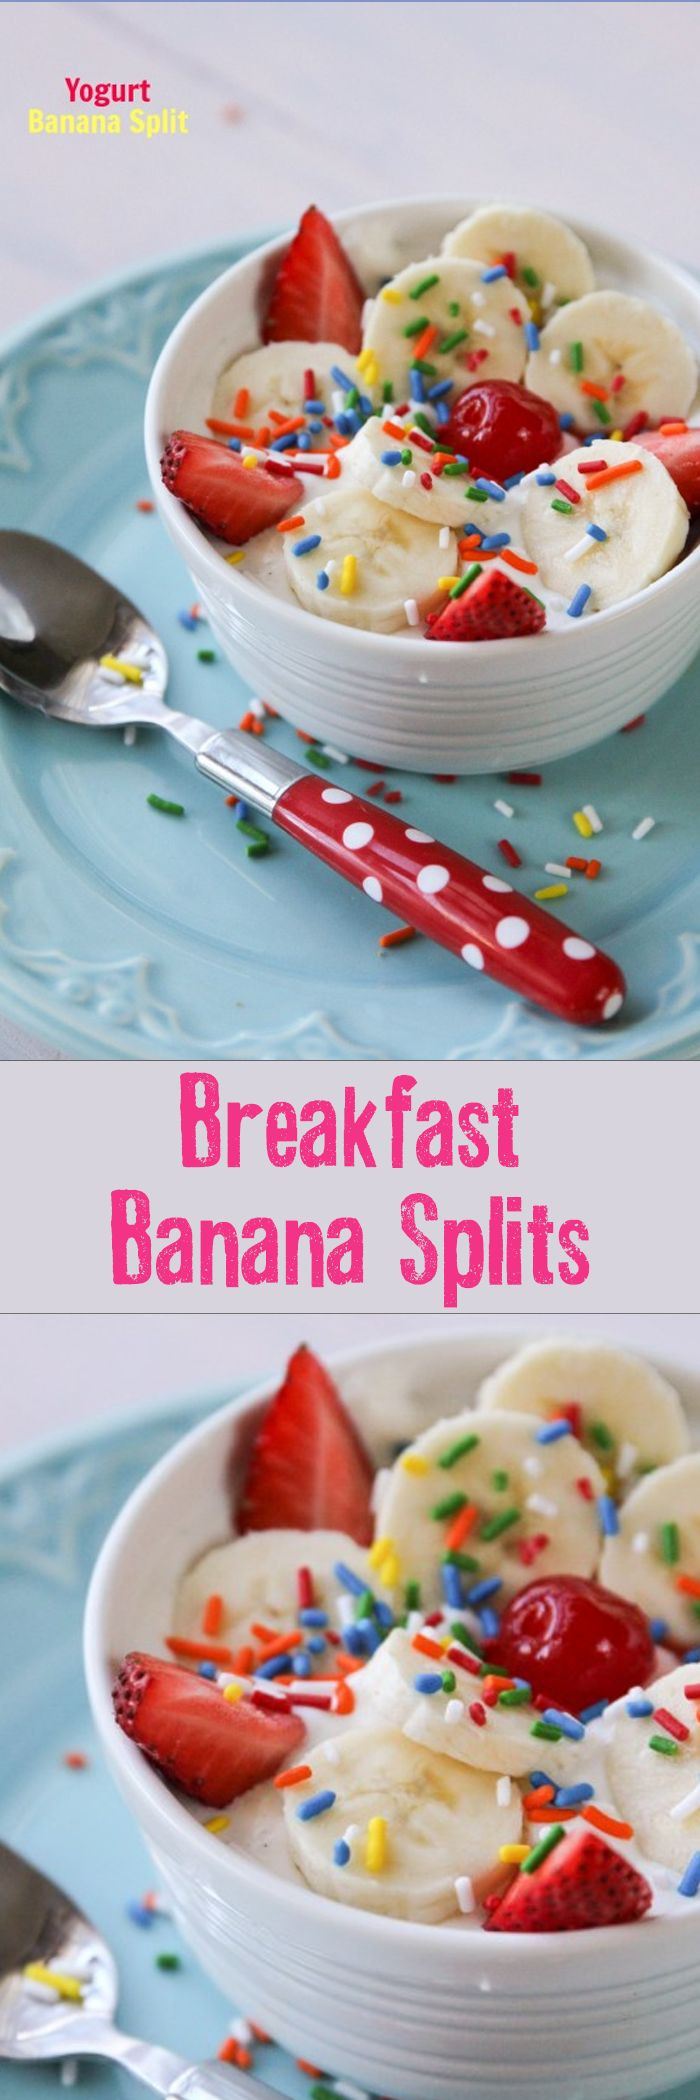 Kids Birthday Breakfast
 The 25 best Birthday breakfast ideas on Pinterest